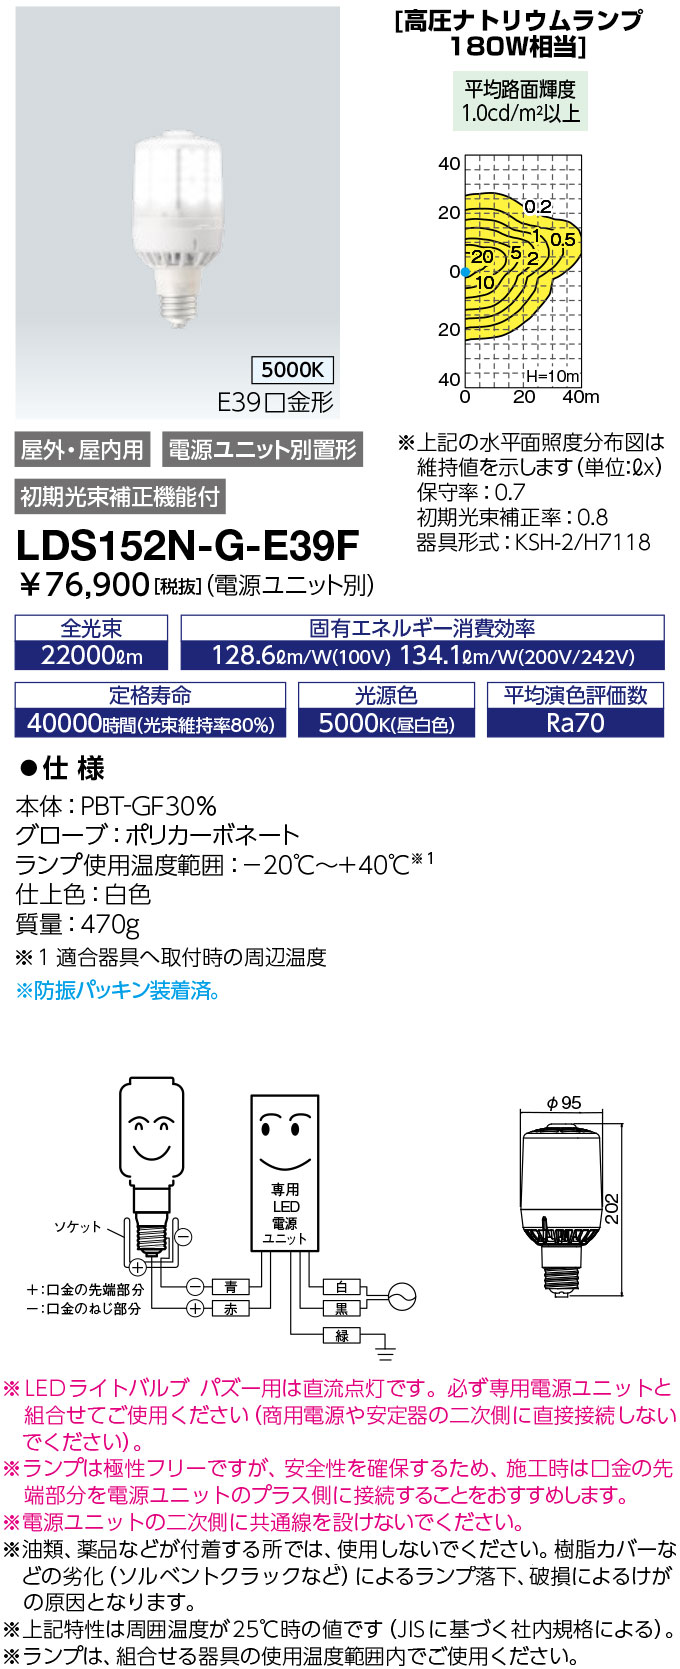 LDS152N-G-E39F